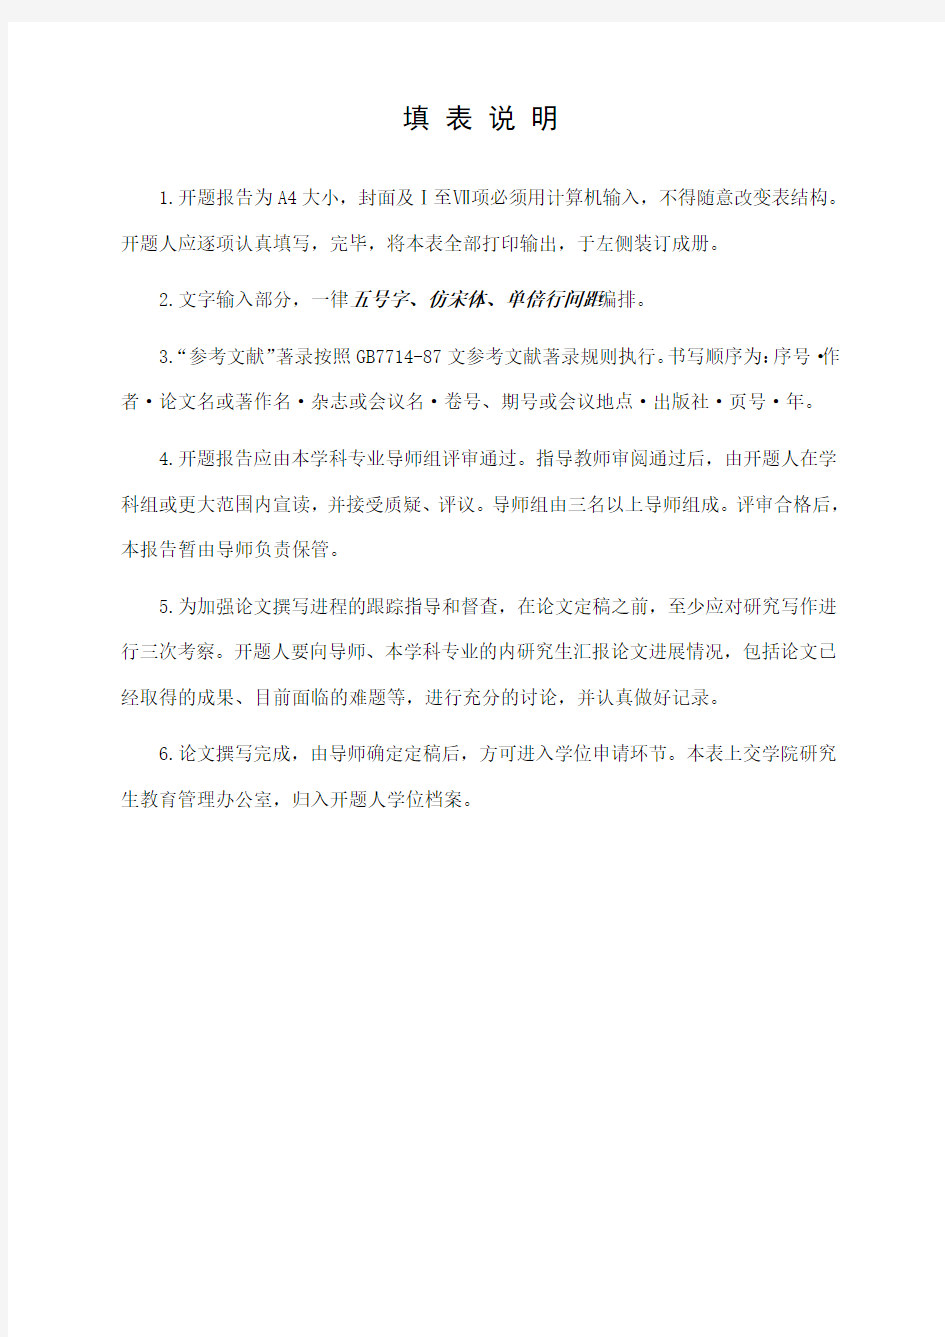 河南大学硕士学位论文开题报告书模板(1)